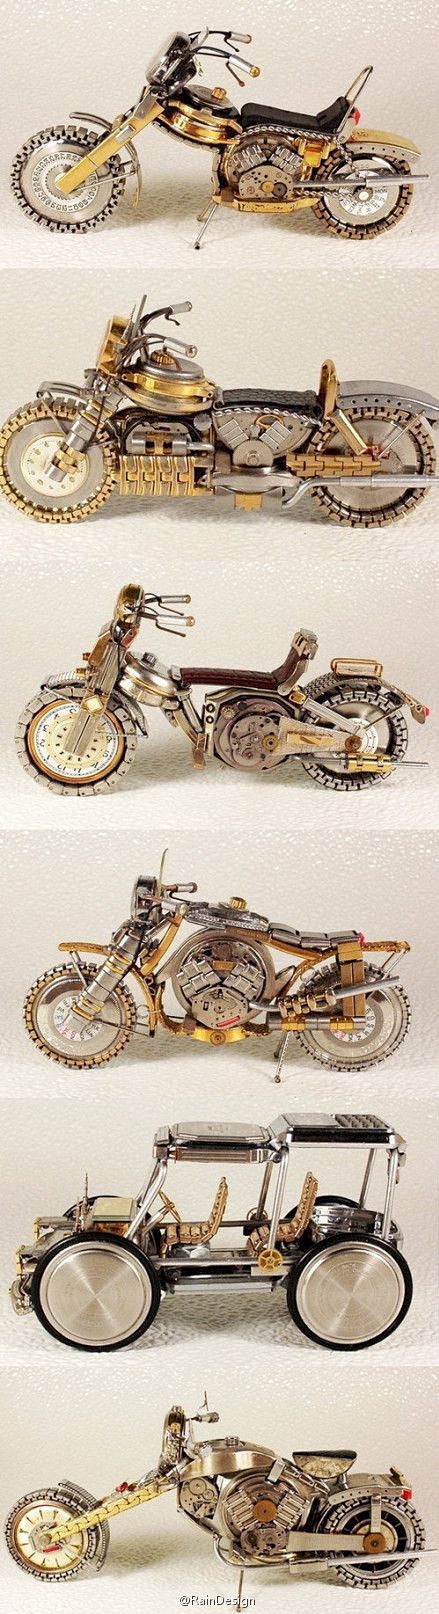 【旧手表做出的摩托车模型】美国强人Dmi...